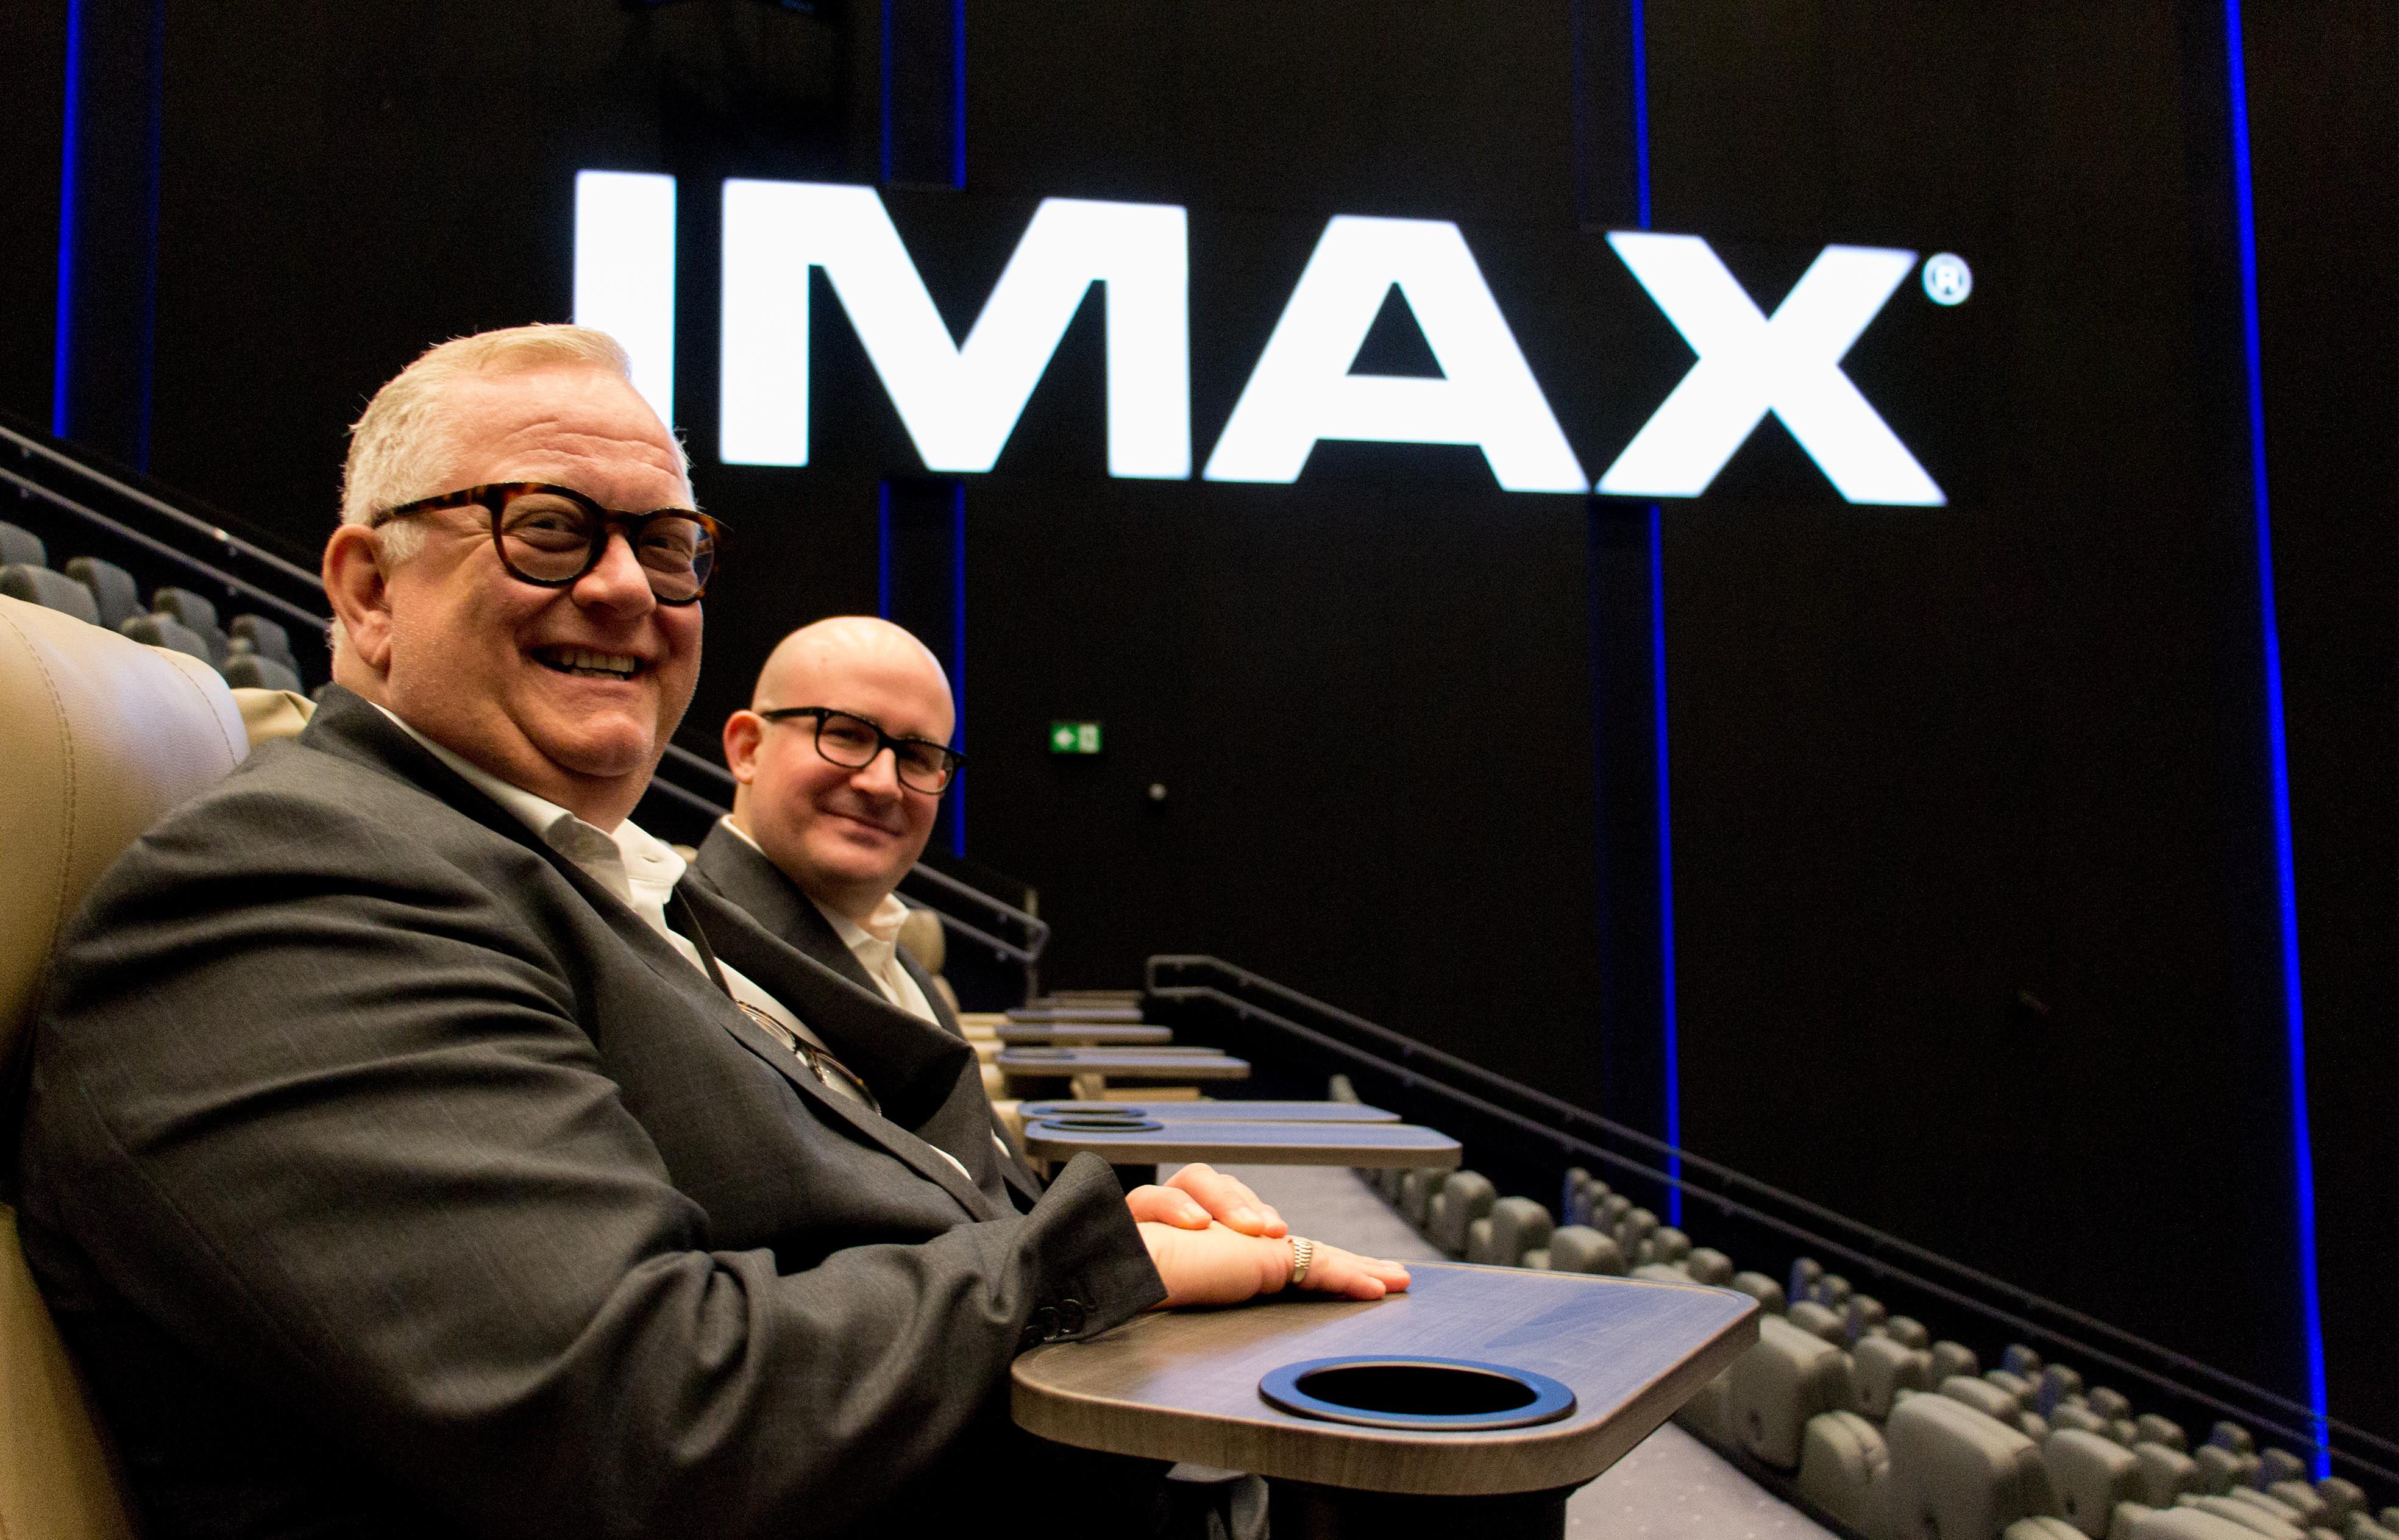 Administrerende direktør for Odeon Kino, Ivar Halstvedt, er fornøyd med både bilde og lyd. Det er også Giovanni Dolci, administrerende direktør i IMAX Europa, som hadde tatt turen til Oslo for å overvære IMAX-premieren.